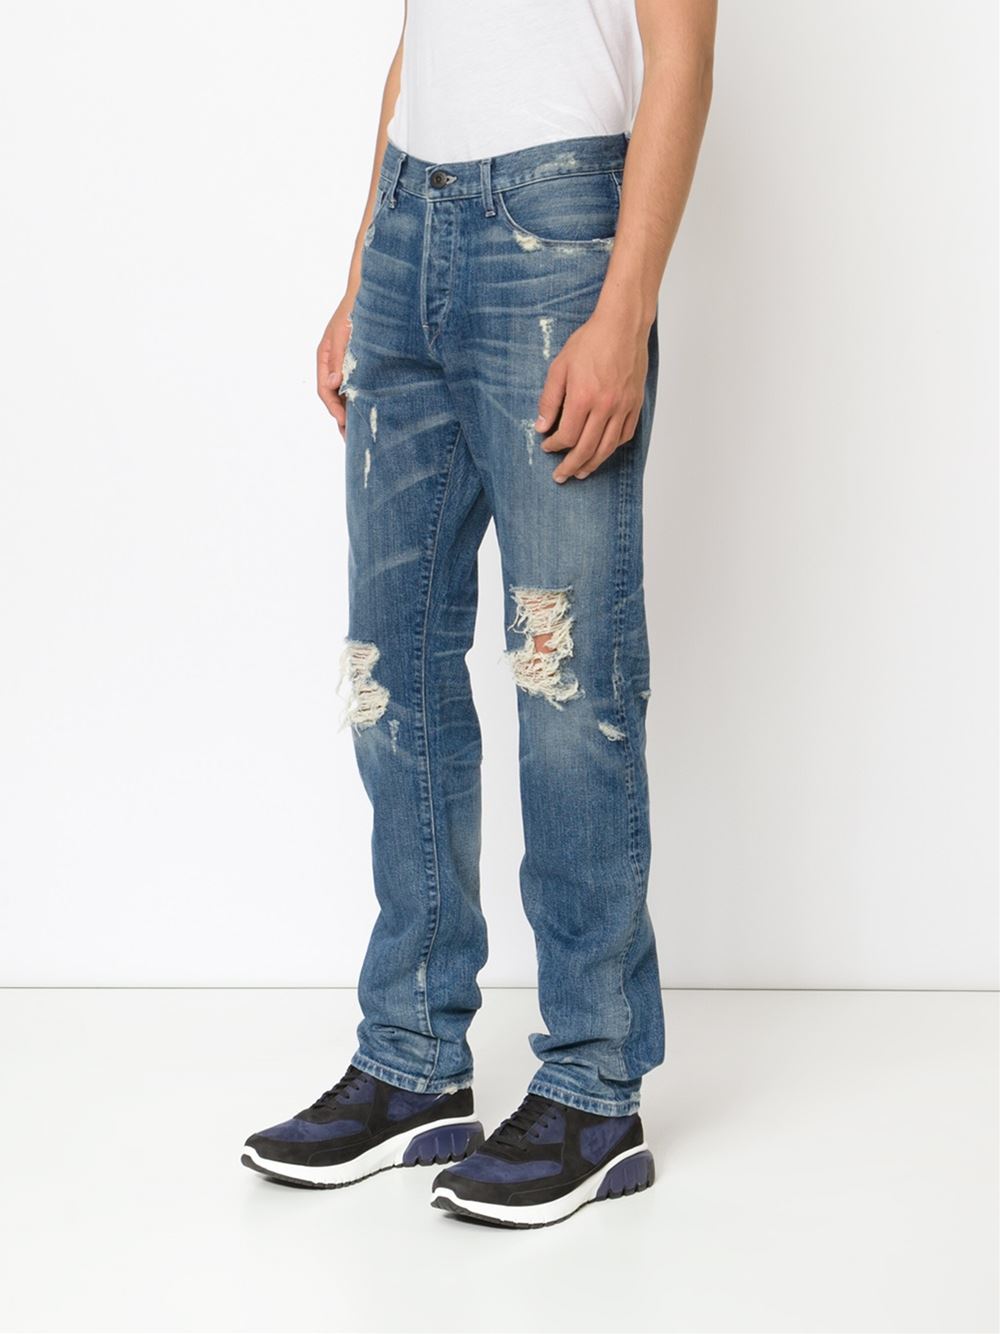 victor cruz 3x1 ripper jeans